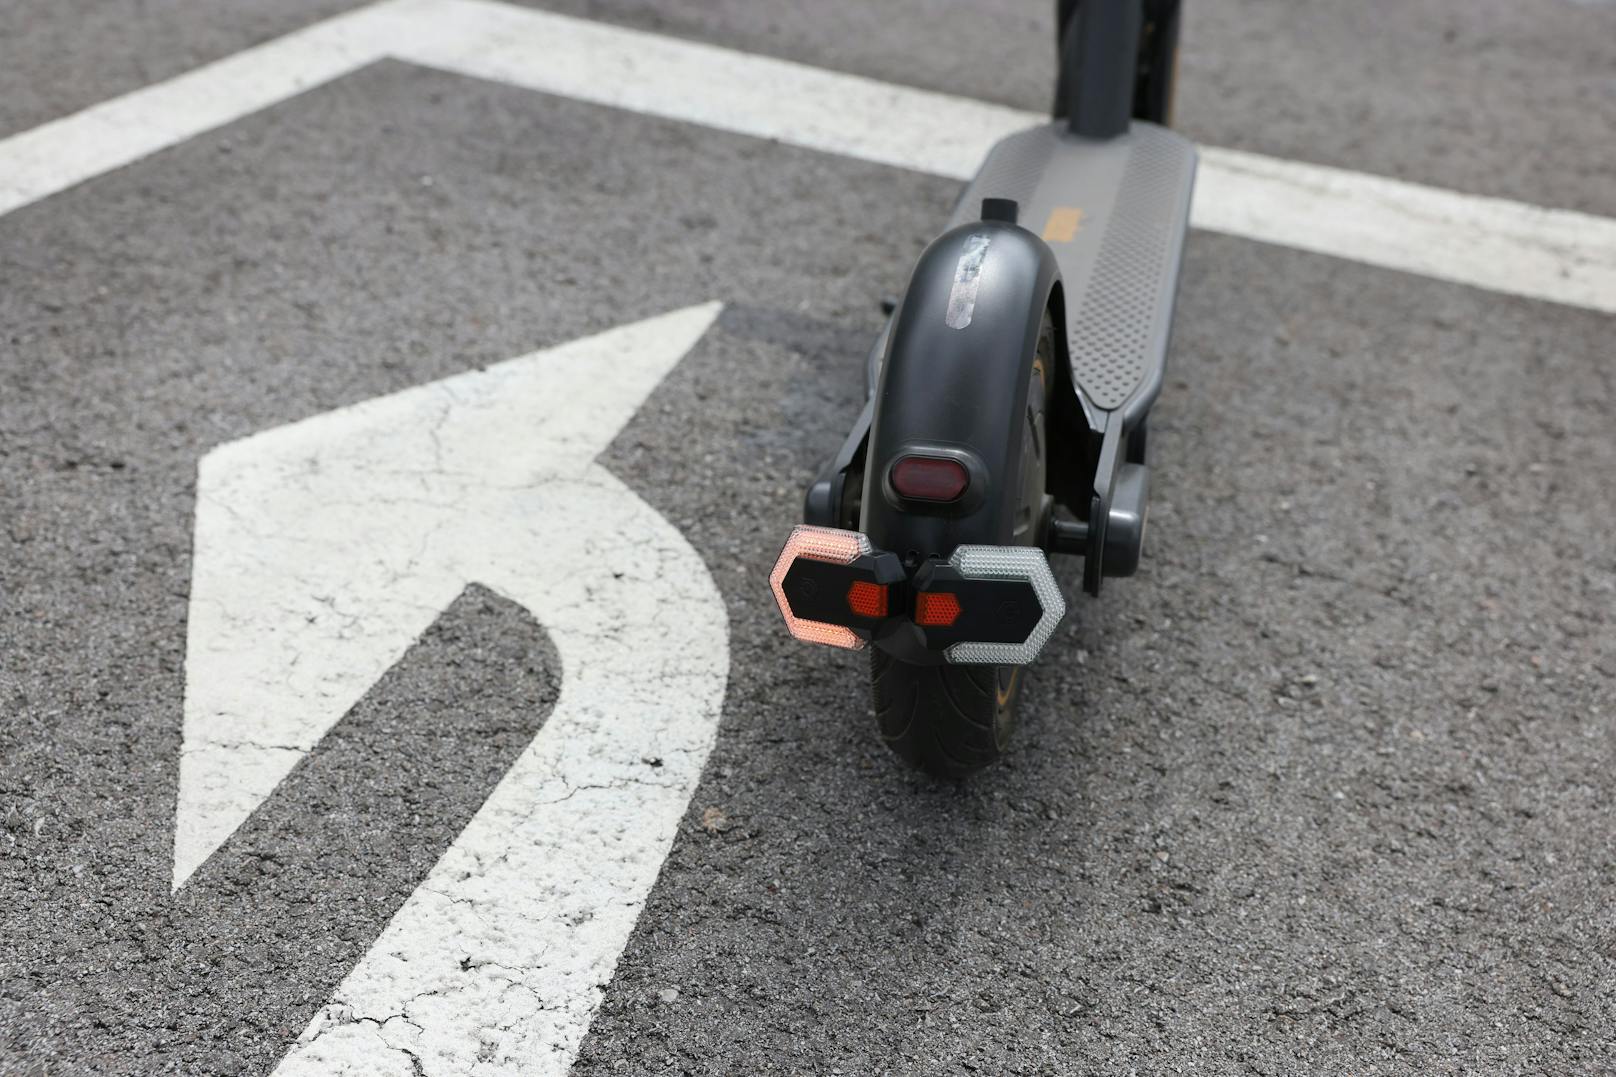 Für den Prototypen haben Techniker Blinker aus dem Fahrrad-Zubehör angebracht, die mit nur einem Bedienelement koppelbar&nbsp;sind und über kabellose Signalübertragung funktionieren.